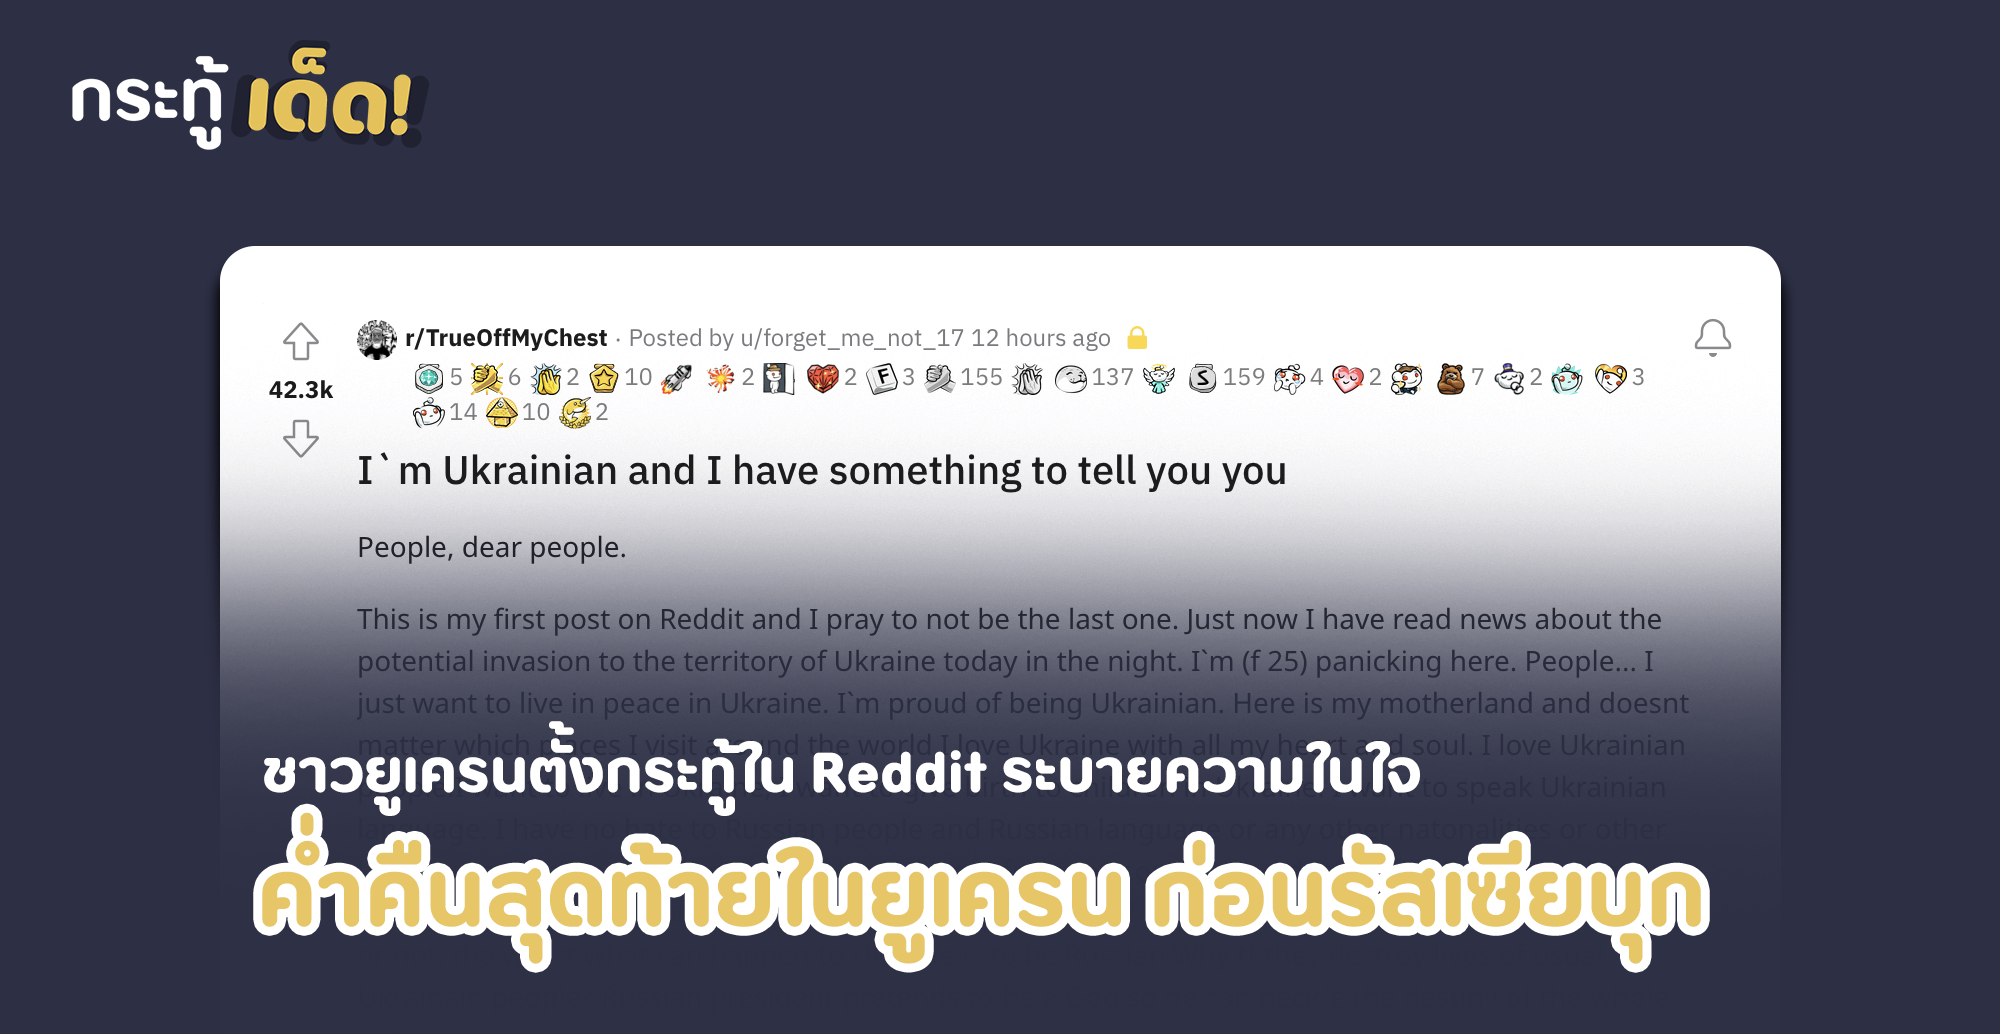 ชาวยูเครนออกมาตั้งกระทู้ใน Reddit บรรยายความรู้สึกจากใจคนยูเครนกรณีรัสเซีย